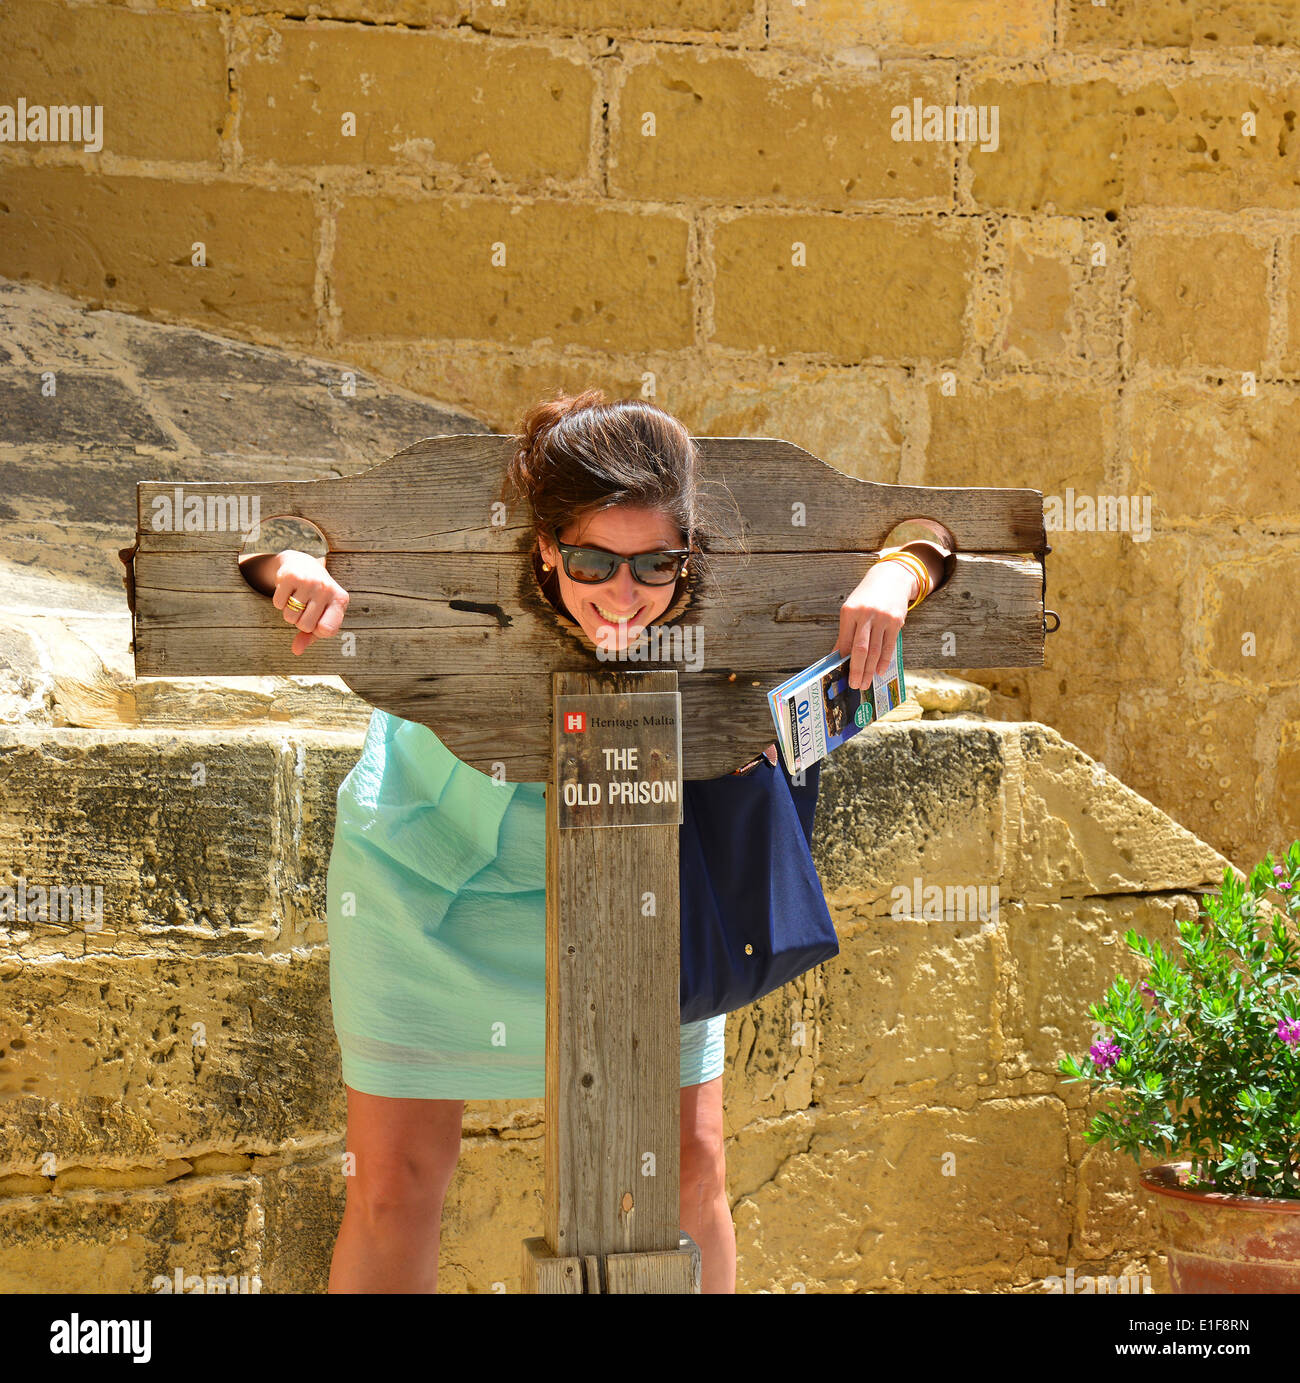 Des stocks au-delà de l'ancienne prison, La Citadelle, Città Victoria, Gozo Gozo (Għawdex), Région, République de Malte Banque D'Images